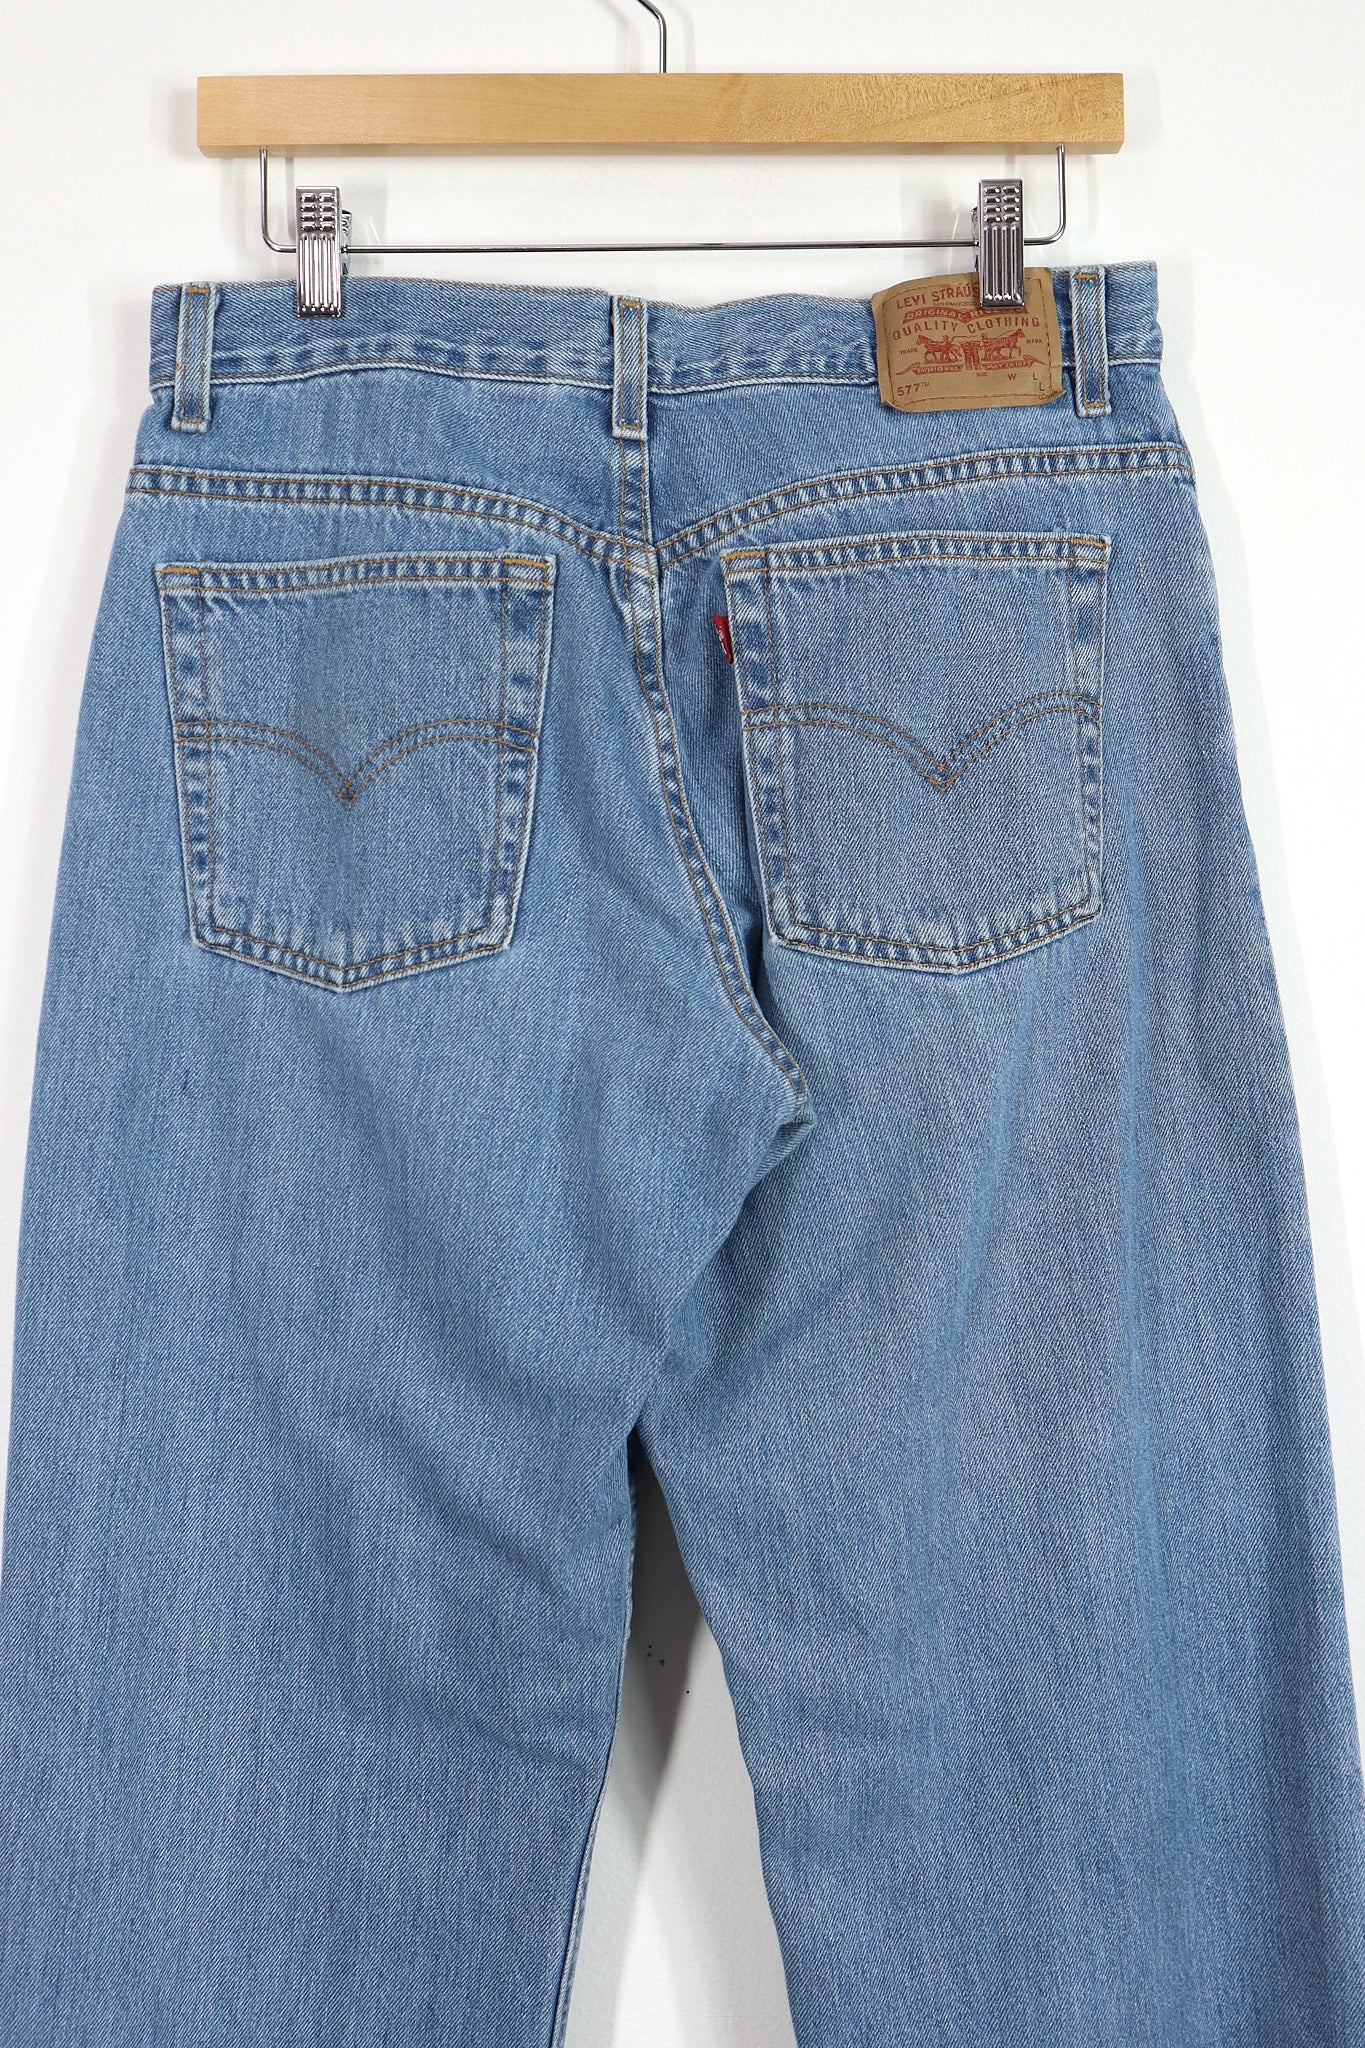 Vintage Levi's 577 Jeans